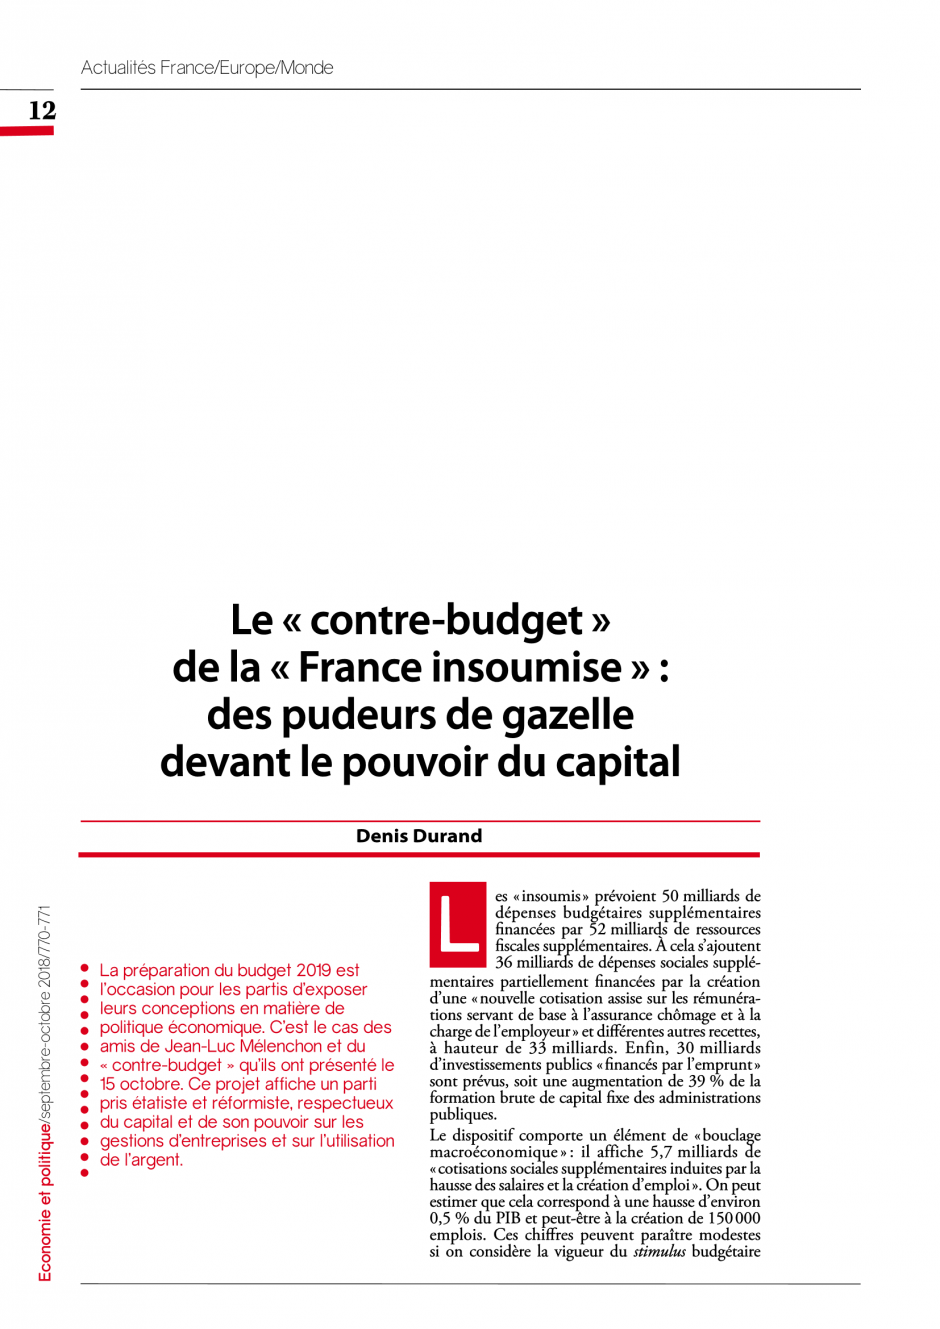 Le « contre-budget » de la « France insoumise » :  des pudeurs de gazelle devant le pouvoir du capital